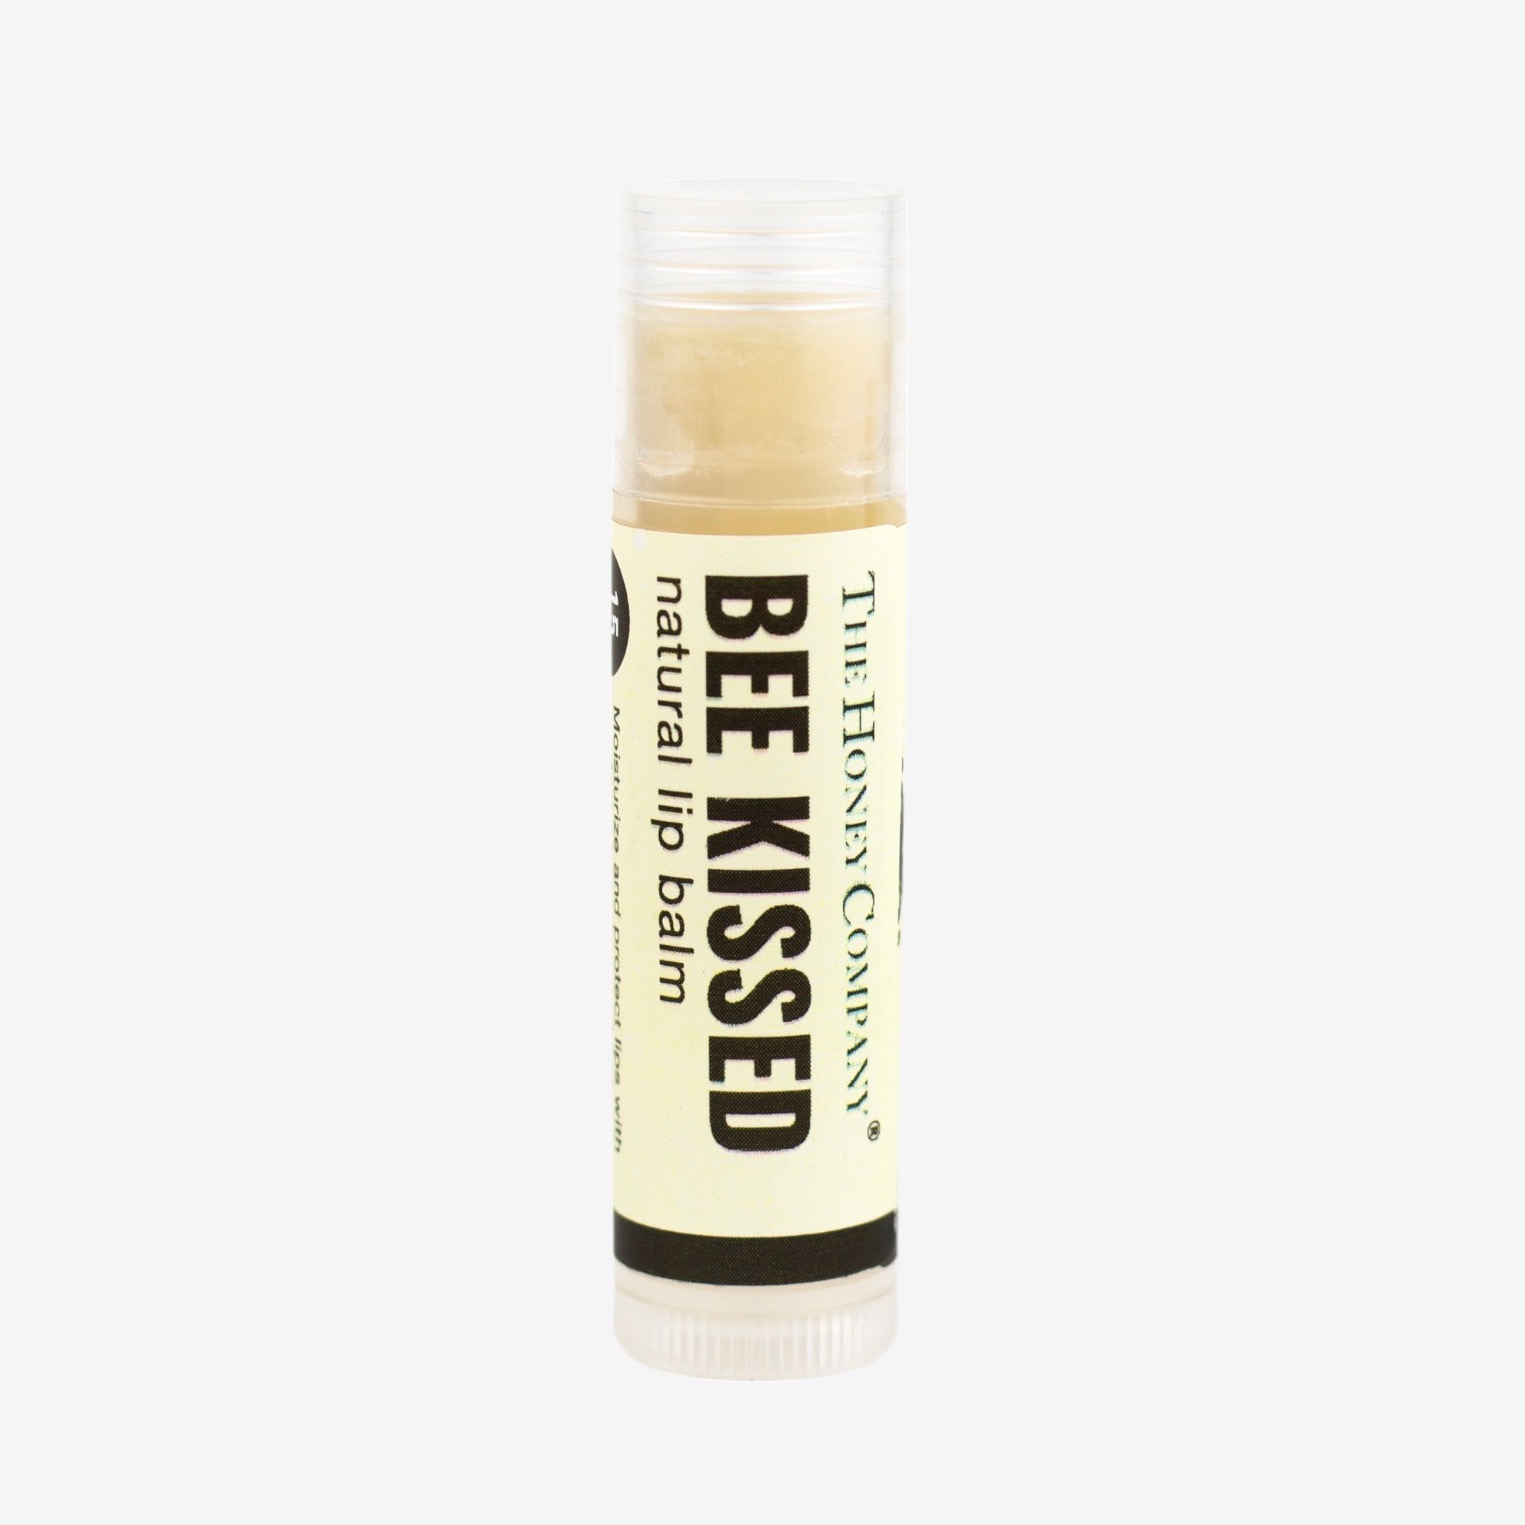 Beeswax Lip Balm by The Honey Company